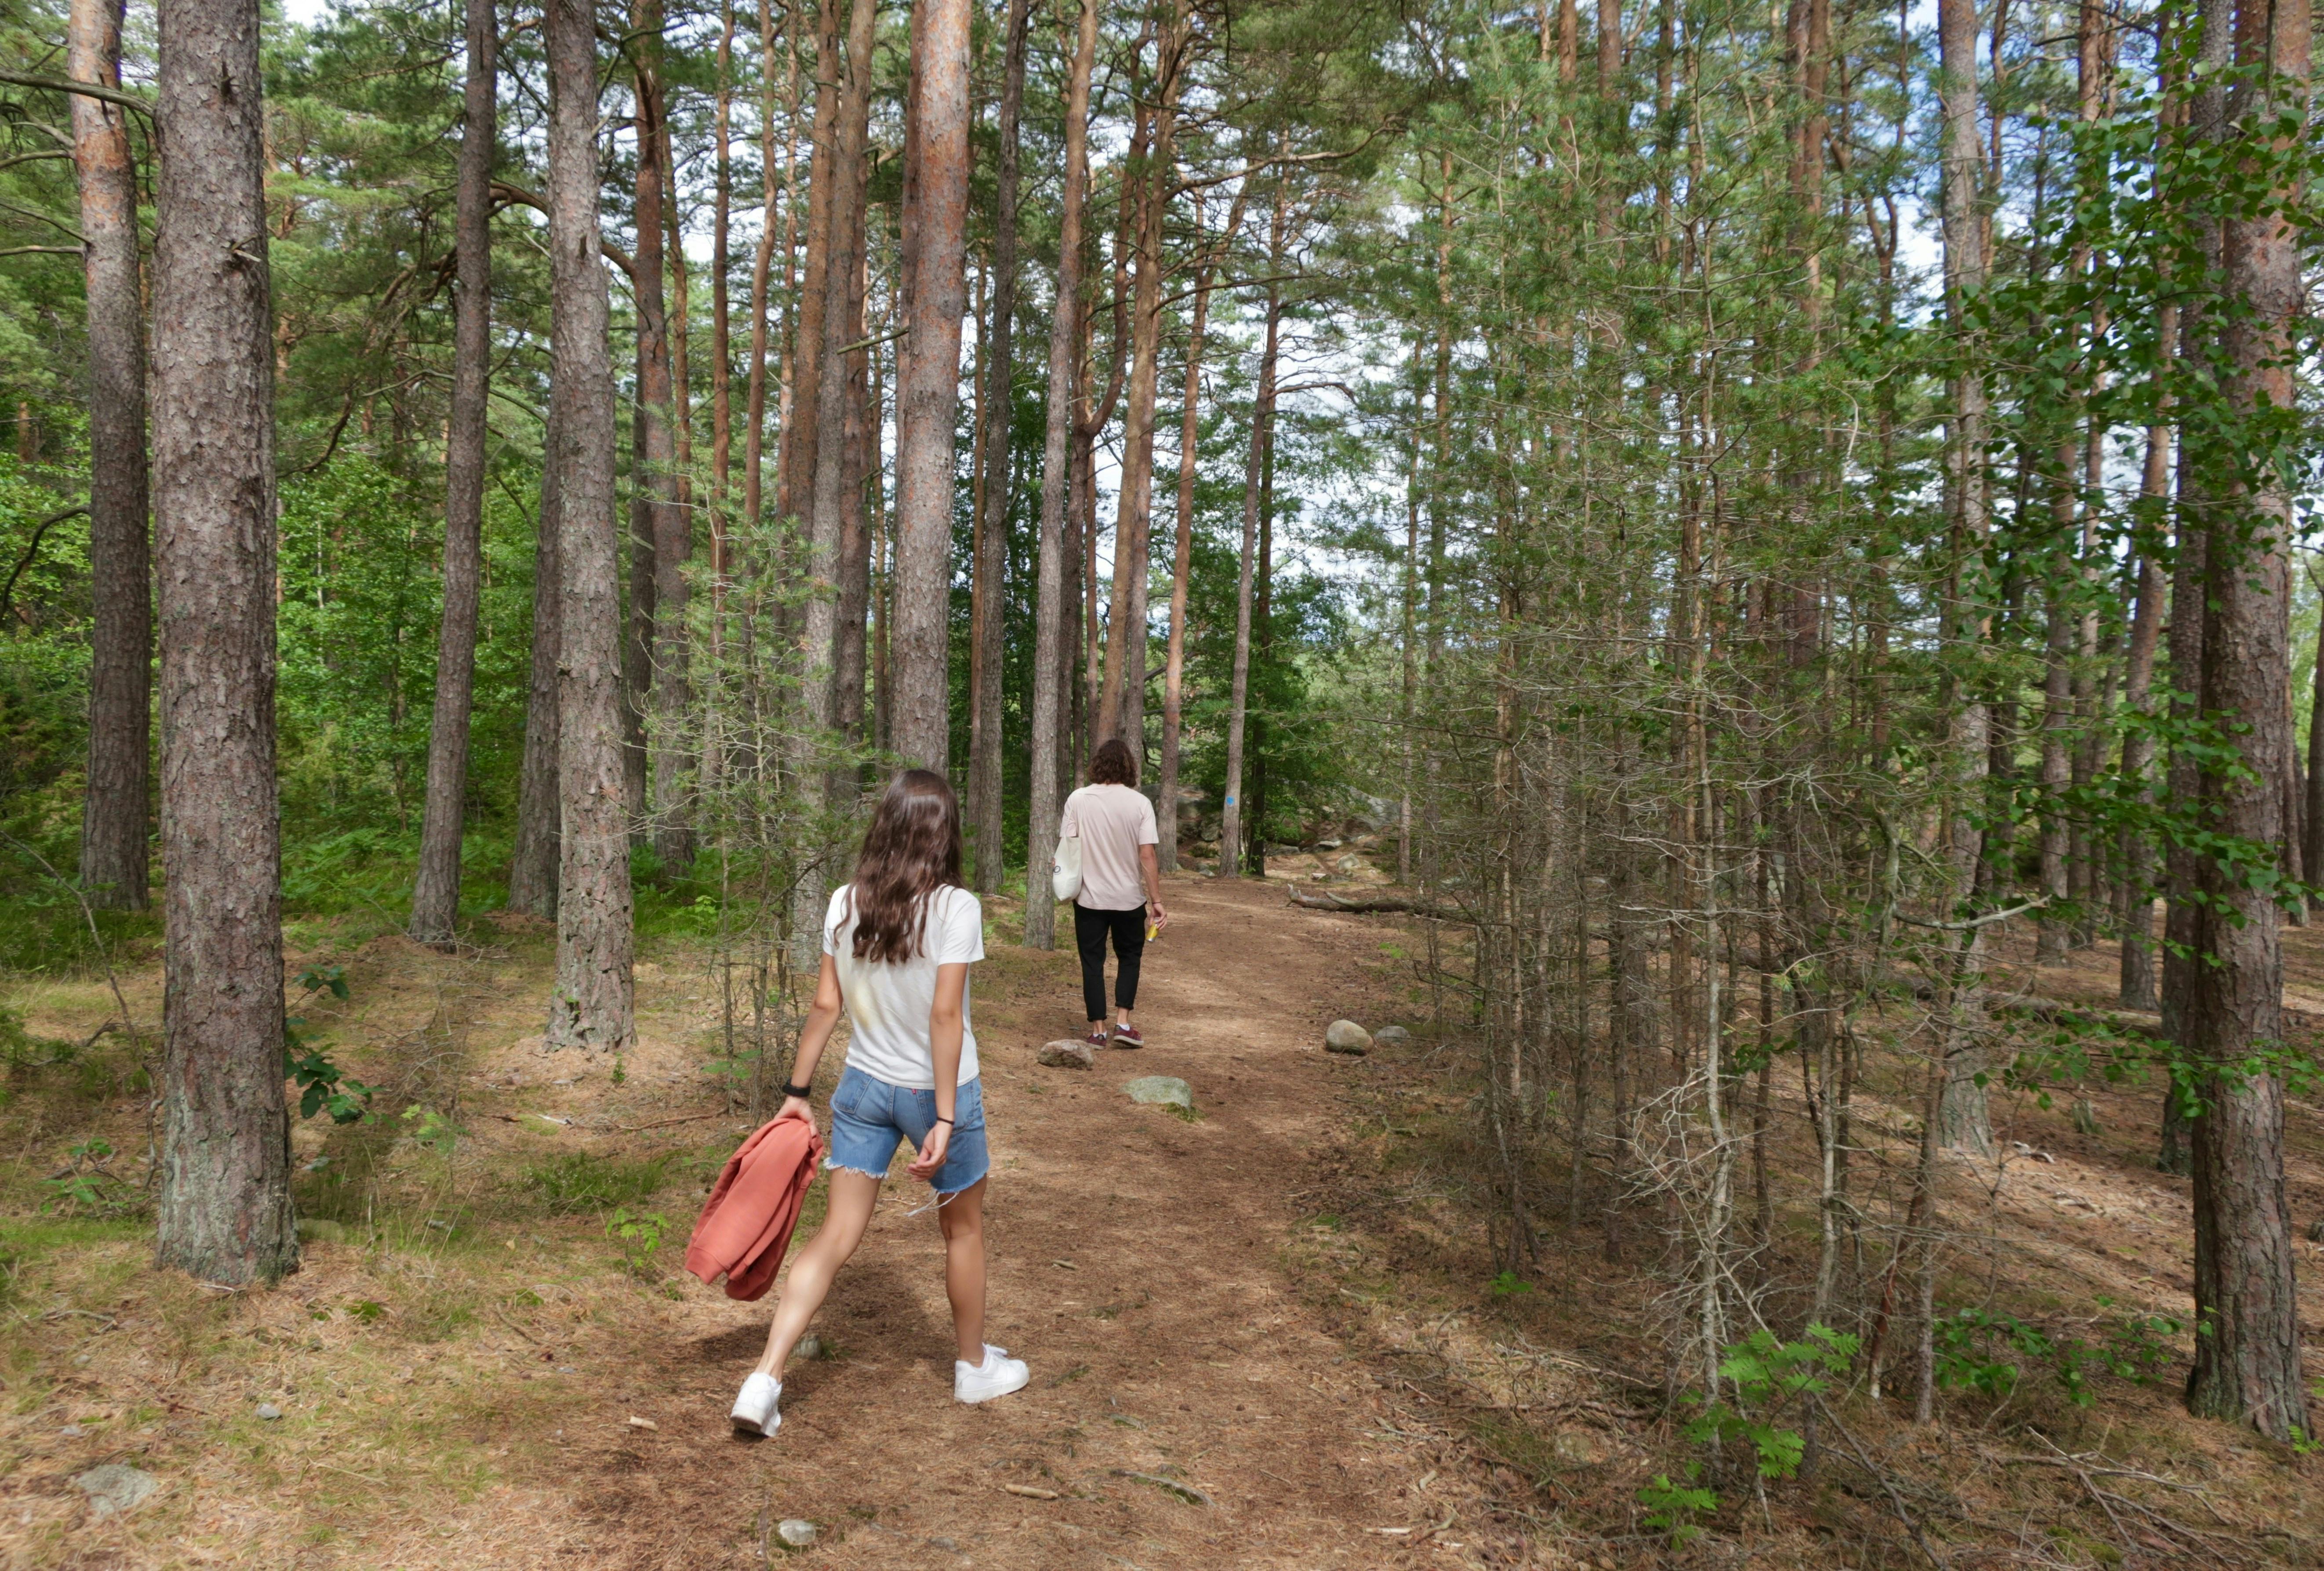 En ny, lang vandrerute skal give vandrere en bedre måde at opleve Danmarks natur på. Foto: Mats Hagwell